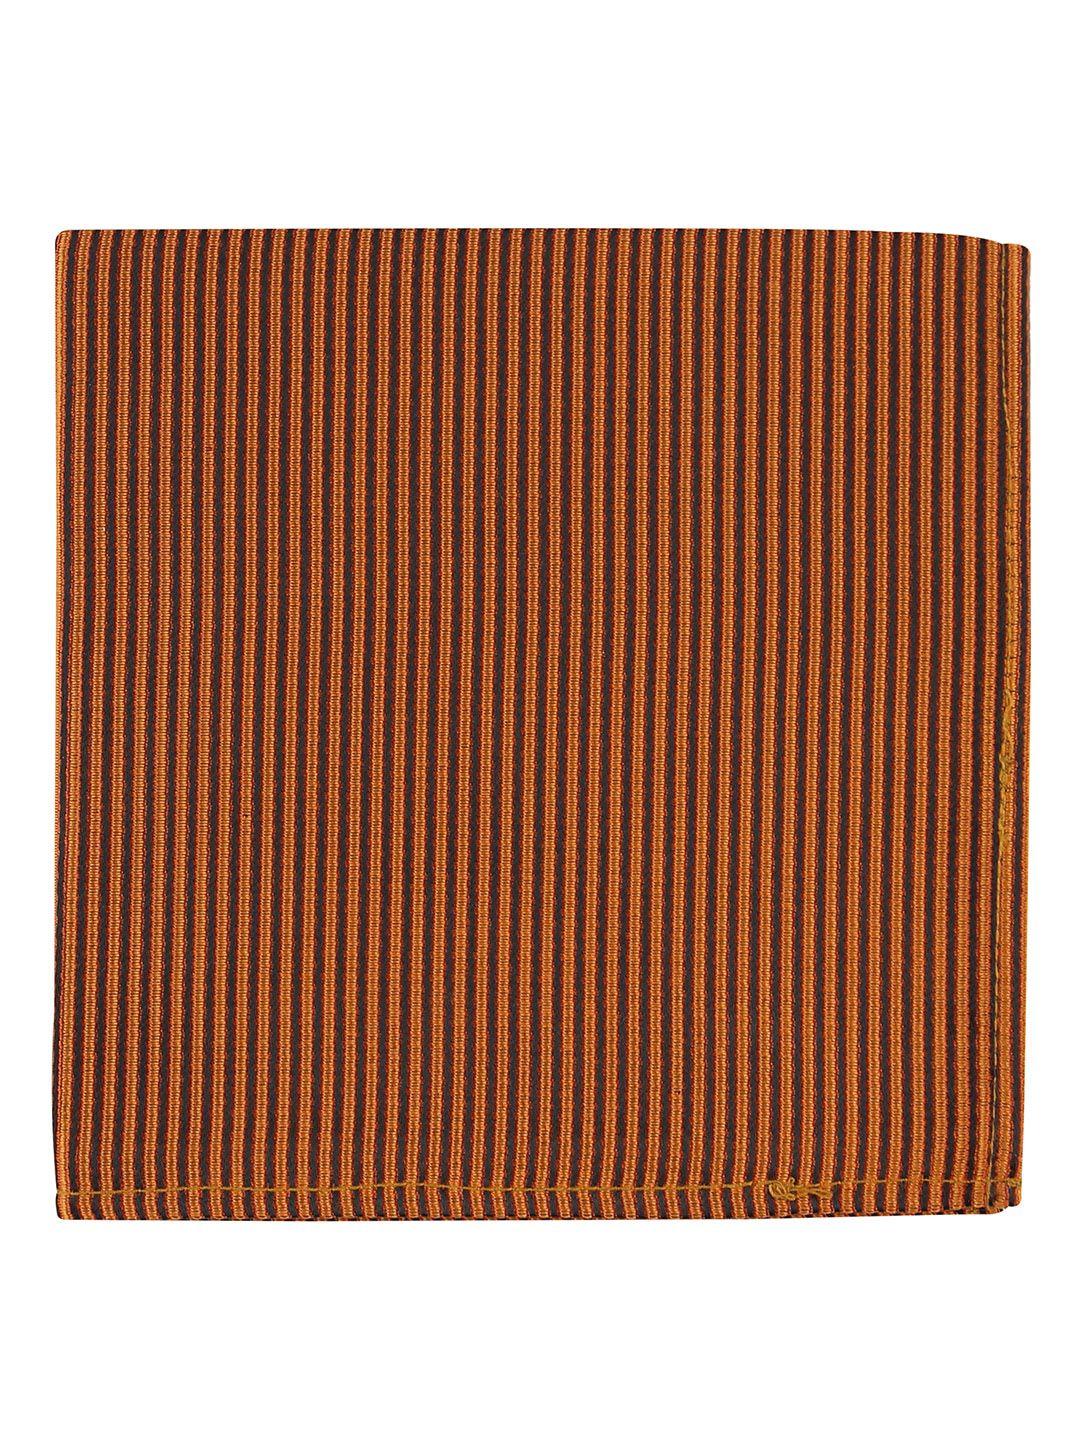 kovove men brown striped pocket square